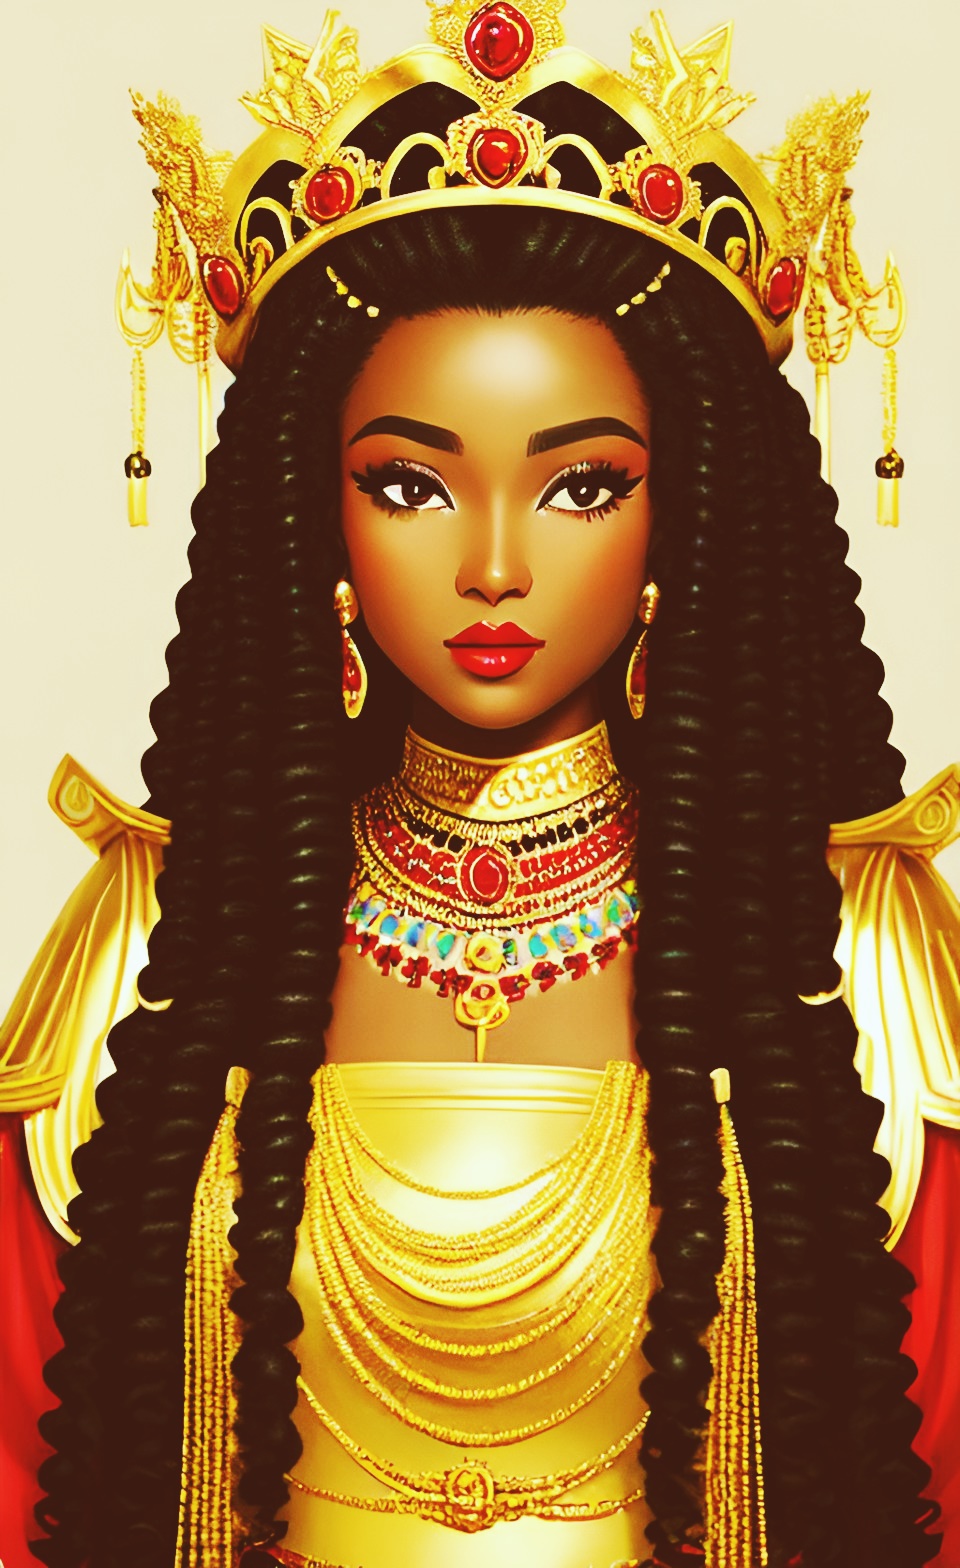 Mixed-race Queen of SHEBA art work Queeno11